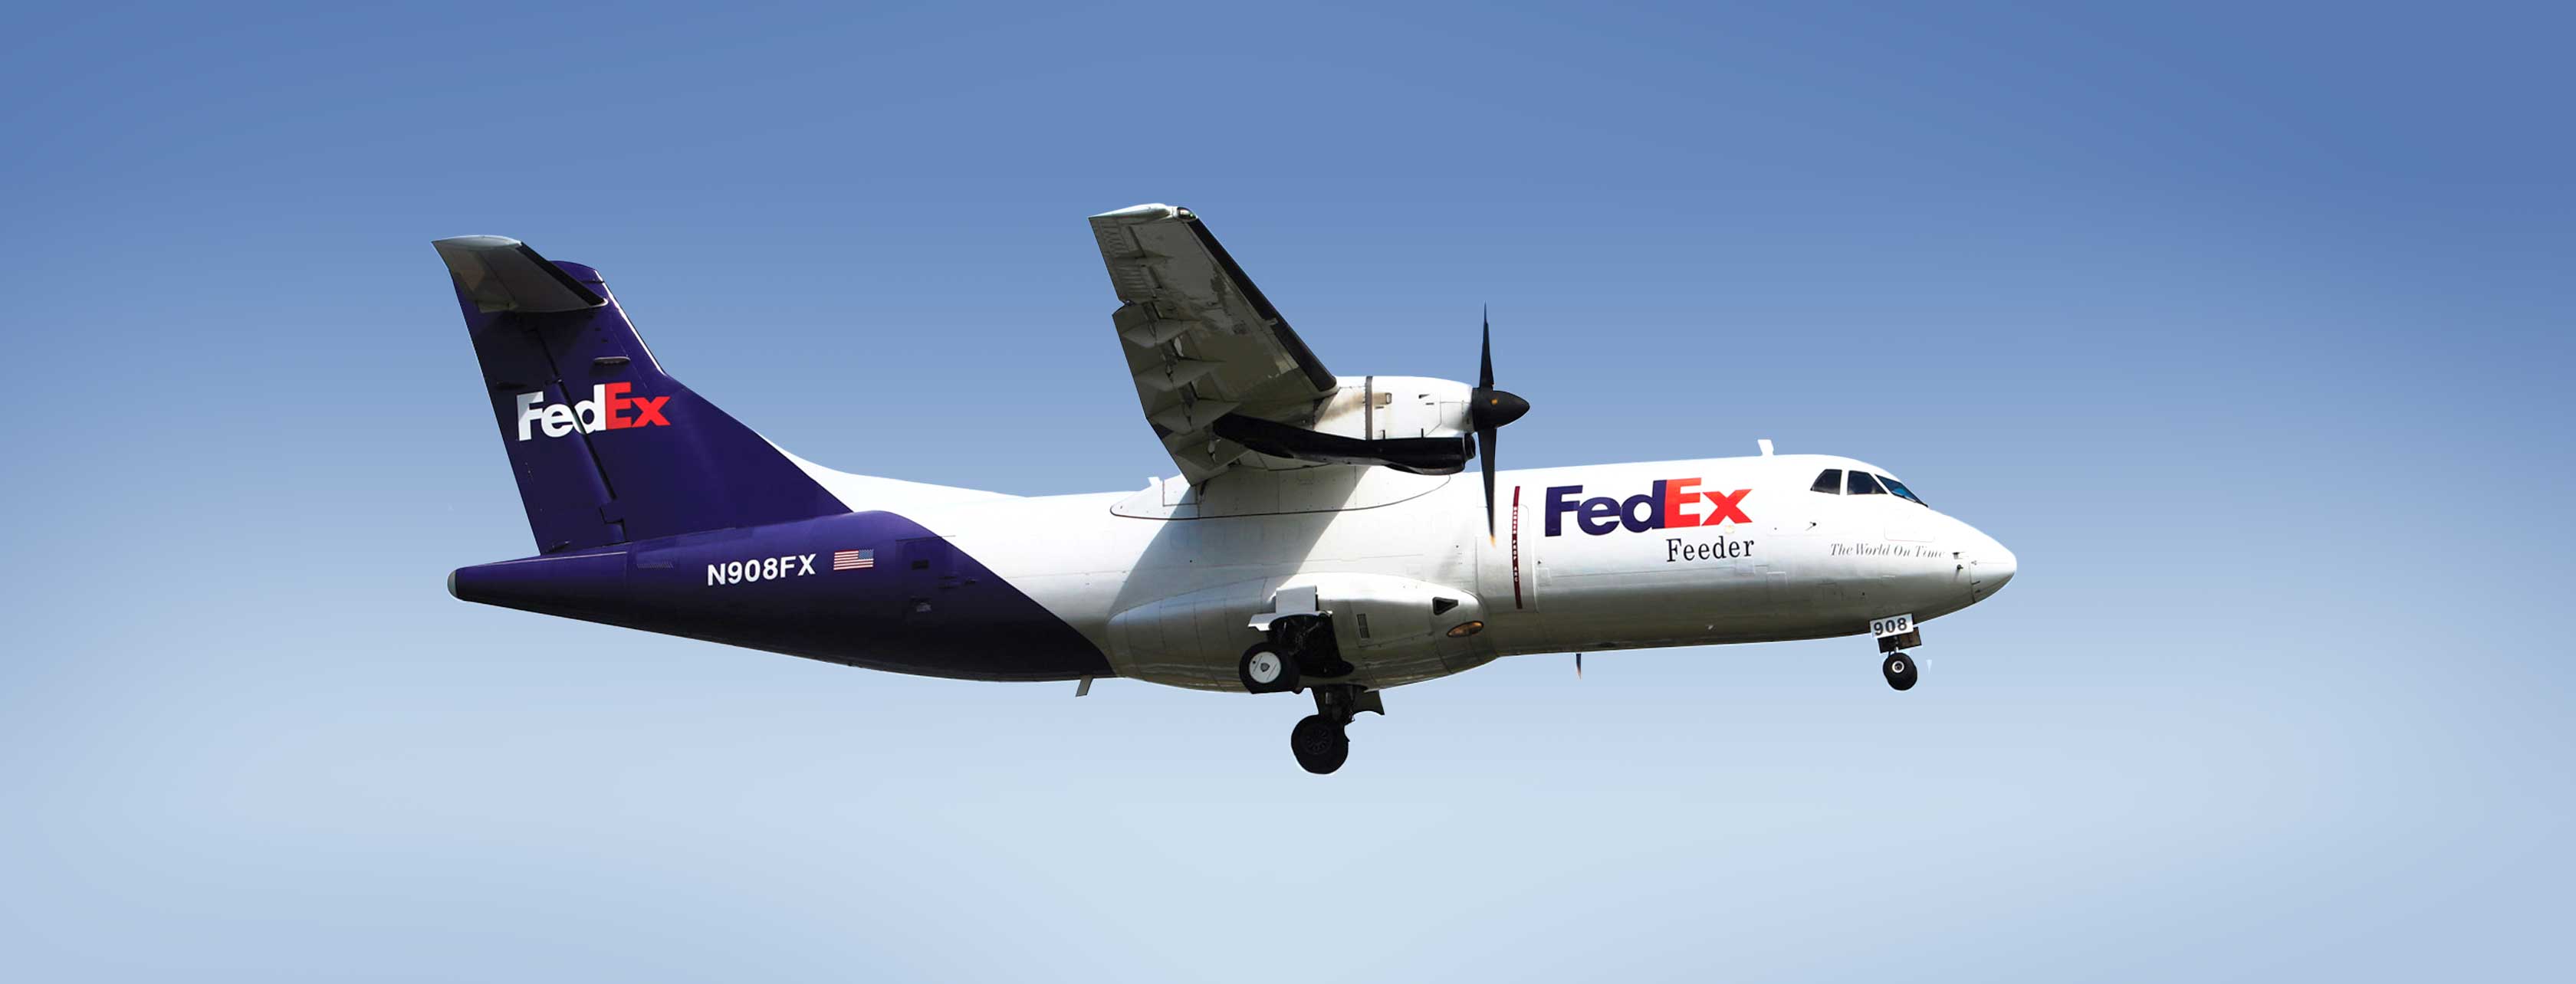 FedEx Feeder airplane